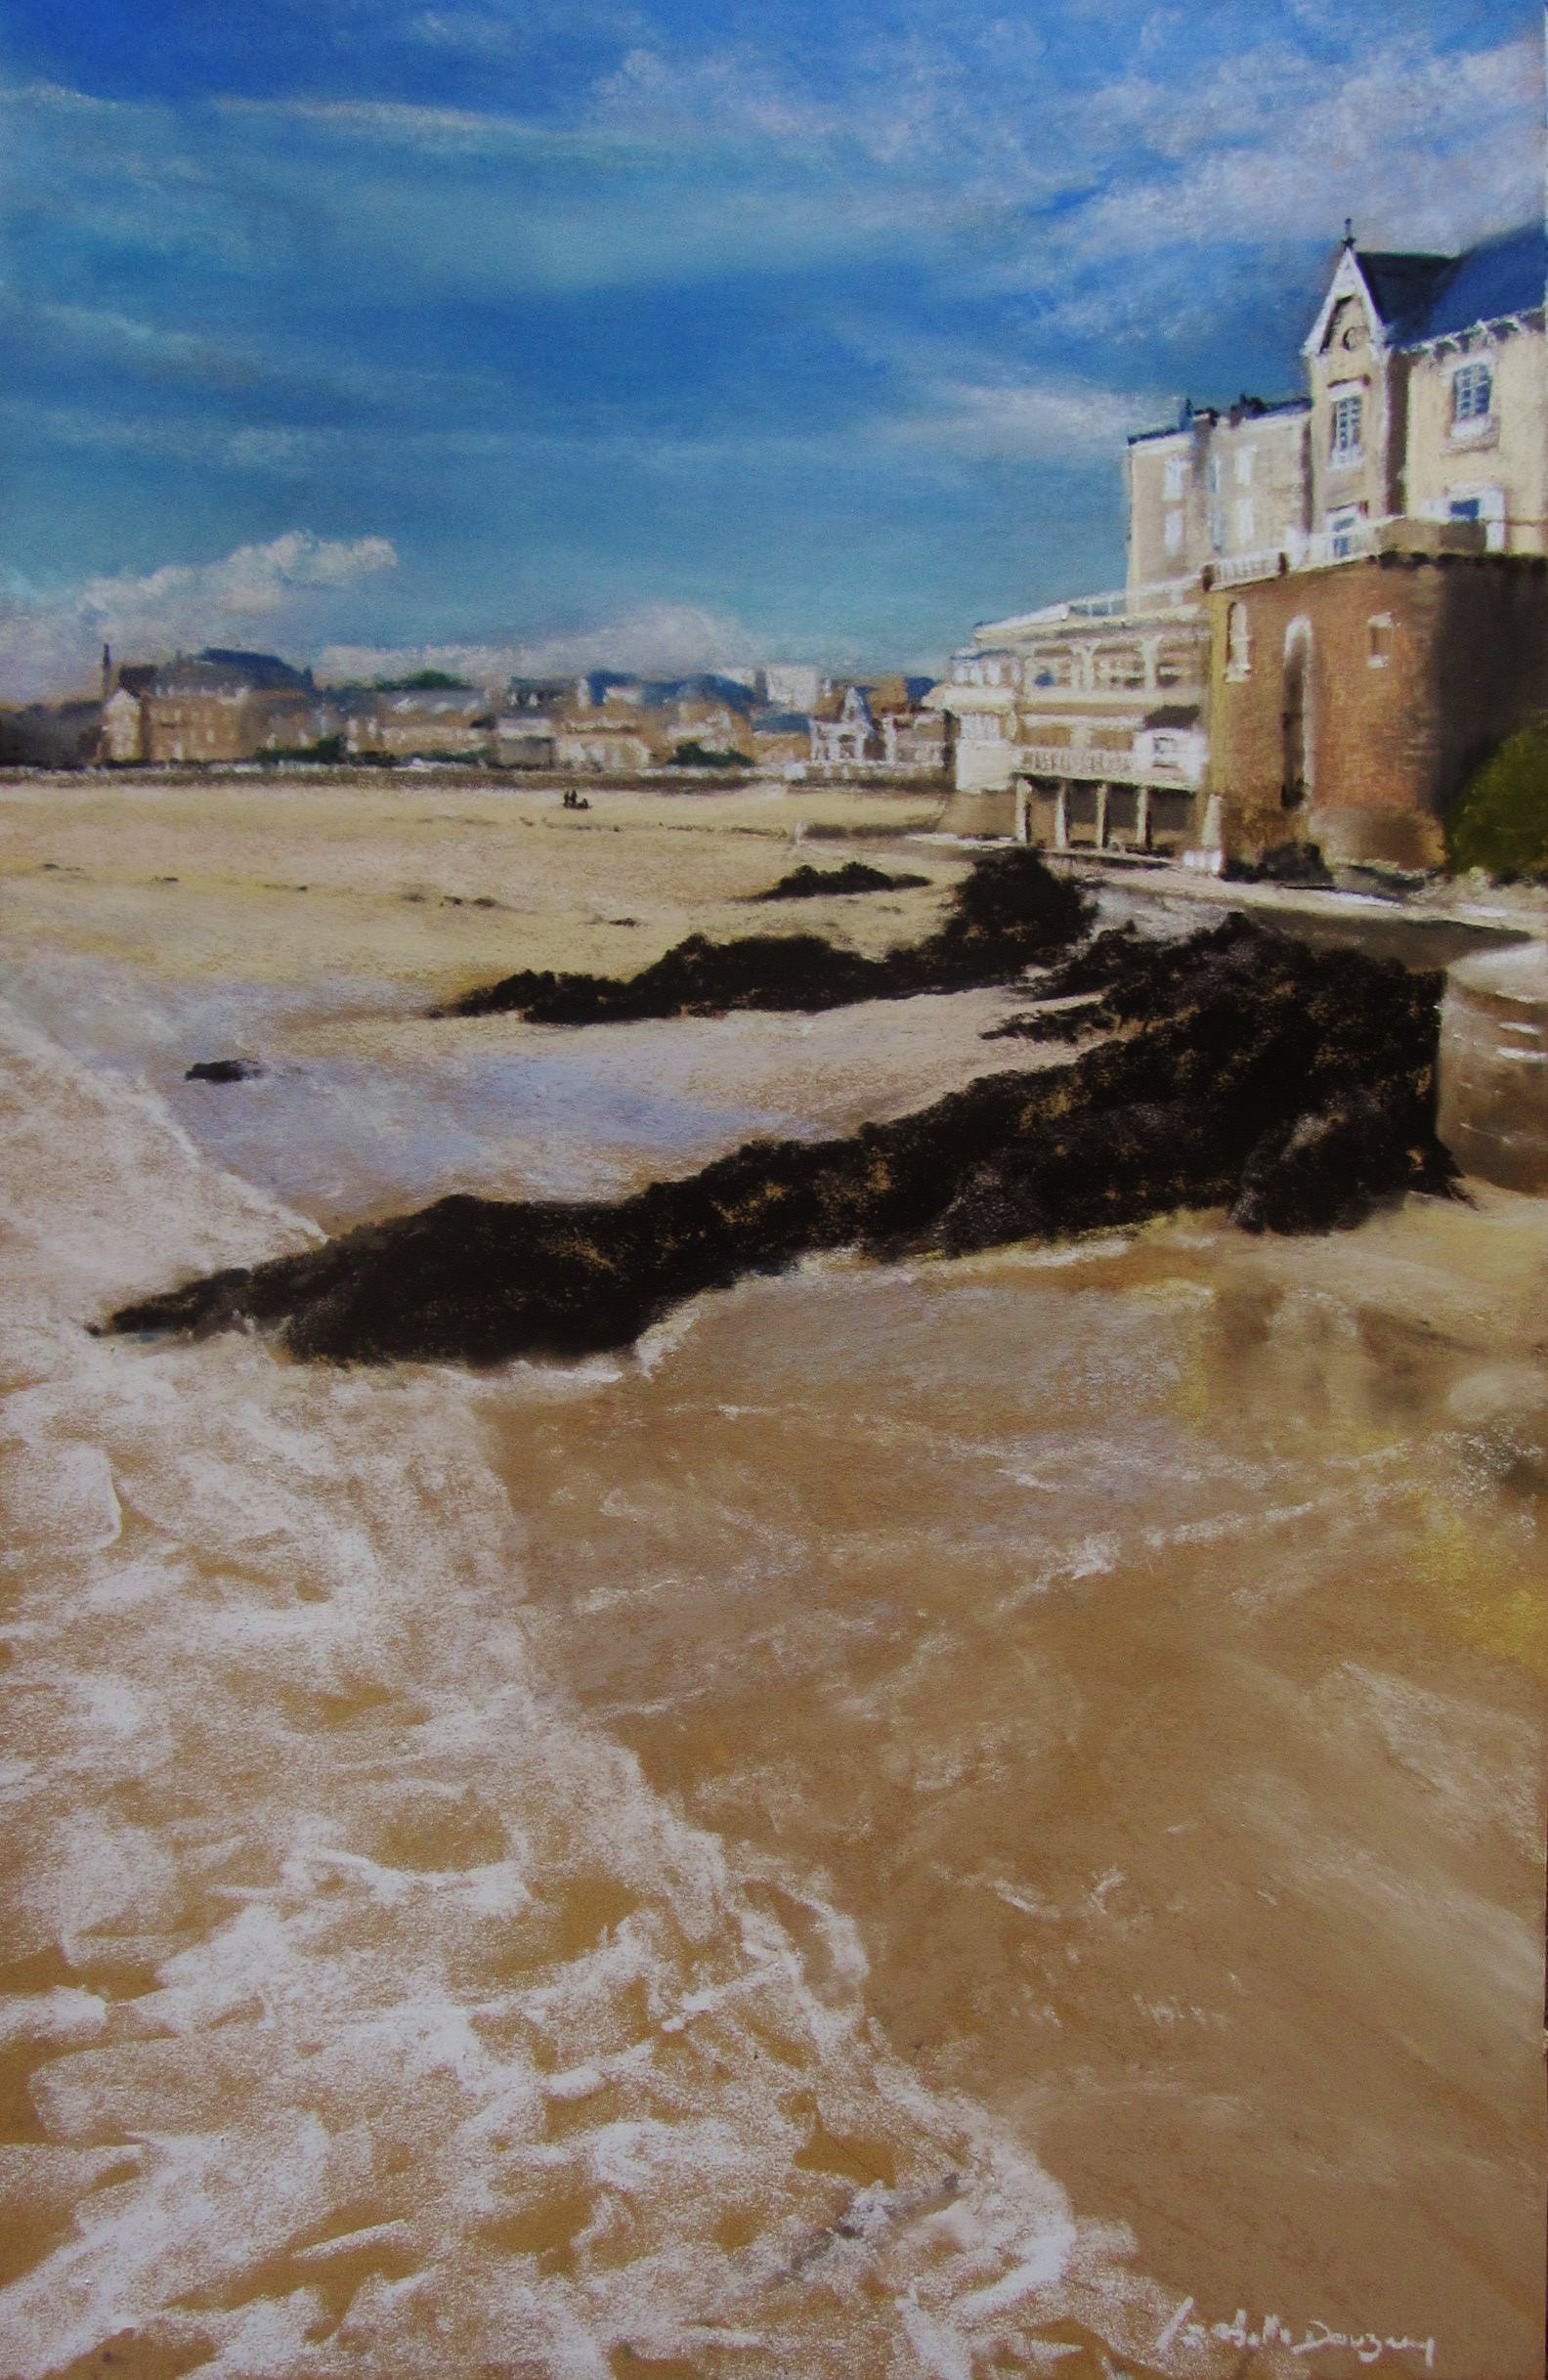 Plage de Saint-Cast-le-guildo - Peinture au pastel sec par Isabelle Douzamy - 56,5 × 76,5 cm (encadré)